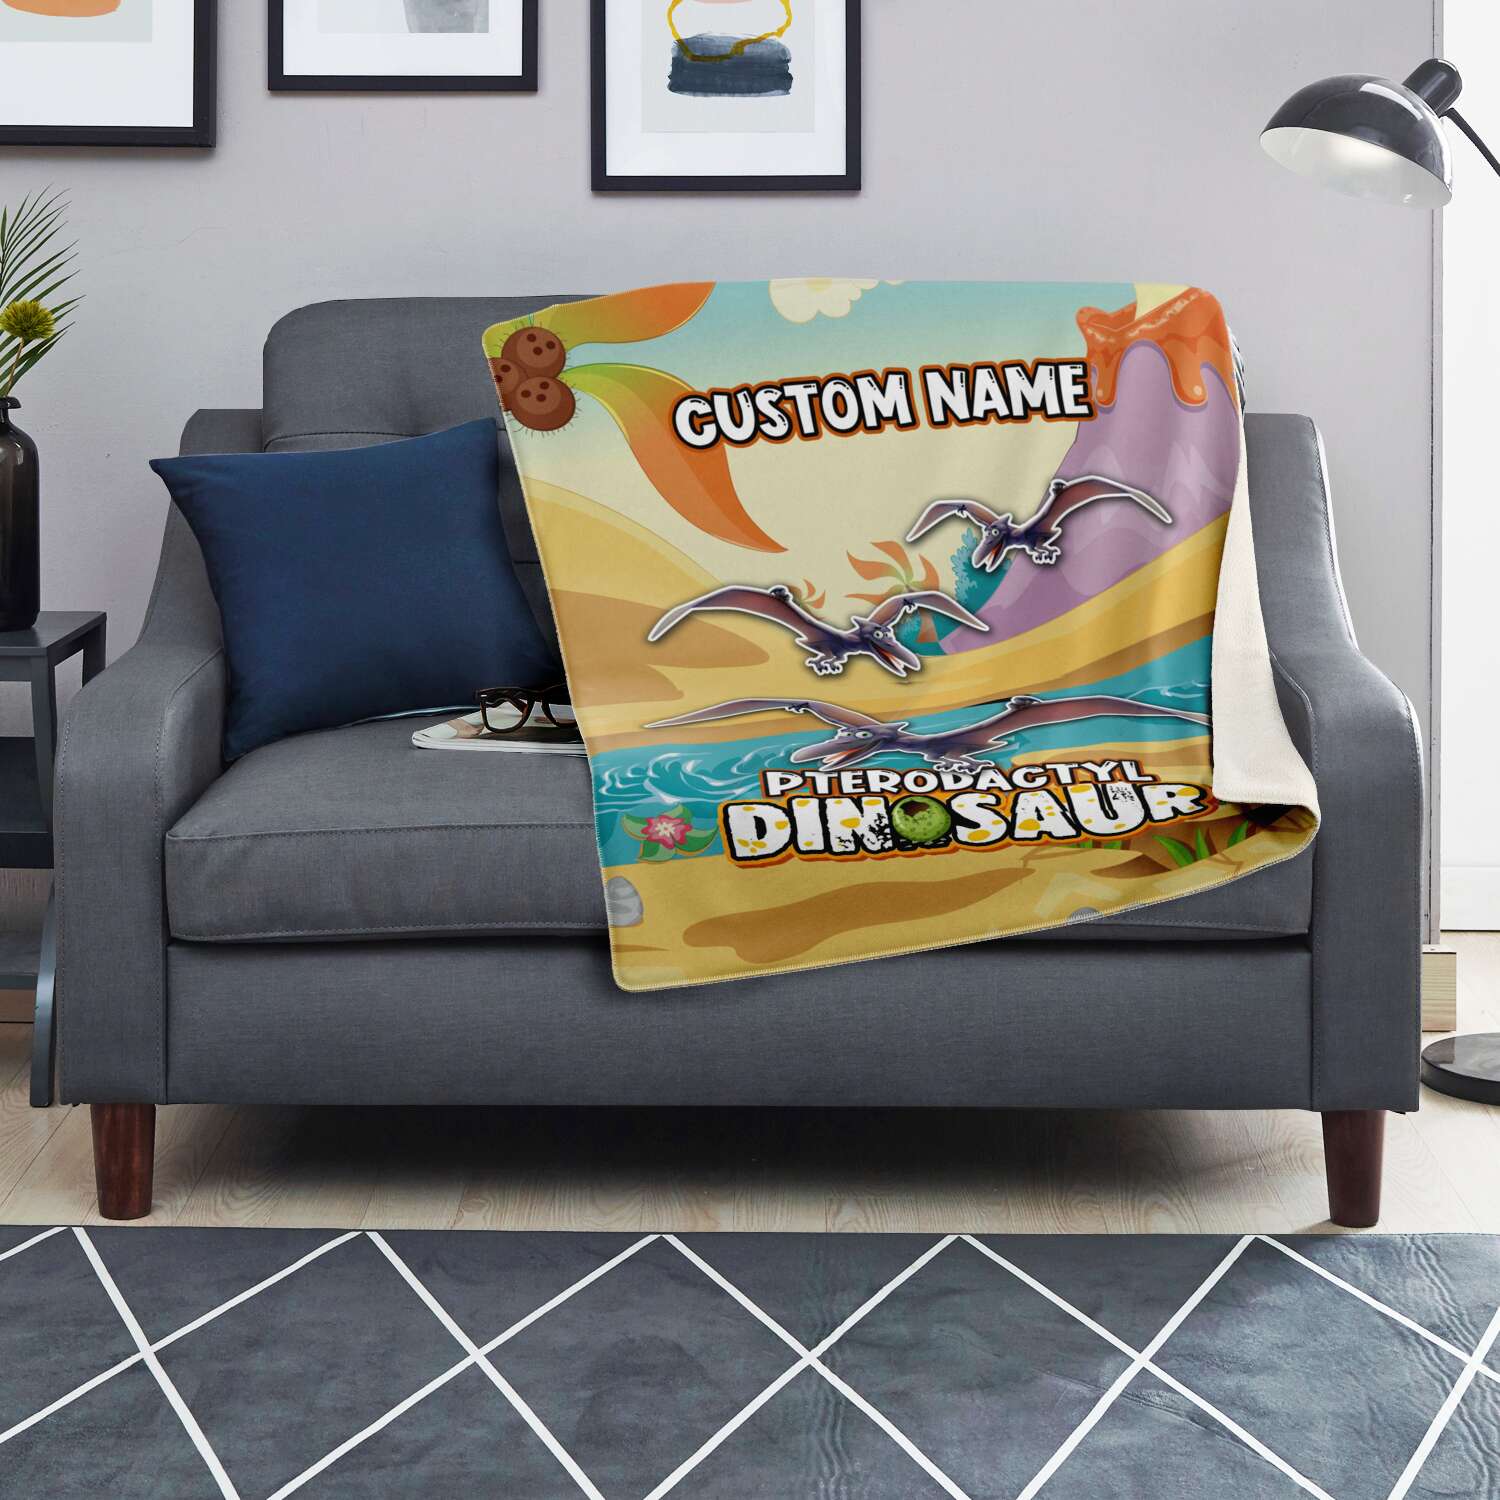 Personalized Name Pterodactyl Dinosaur Blanket for Kids, Custom Name Blanket for Boys & Girls